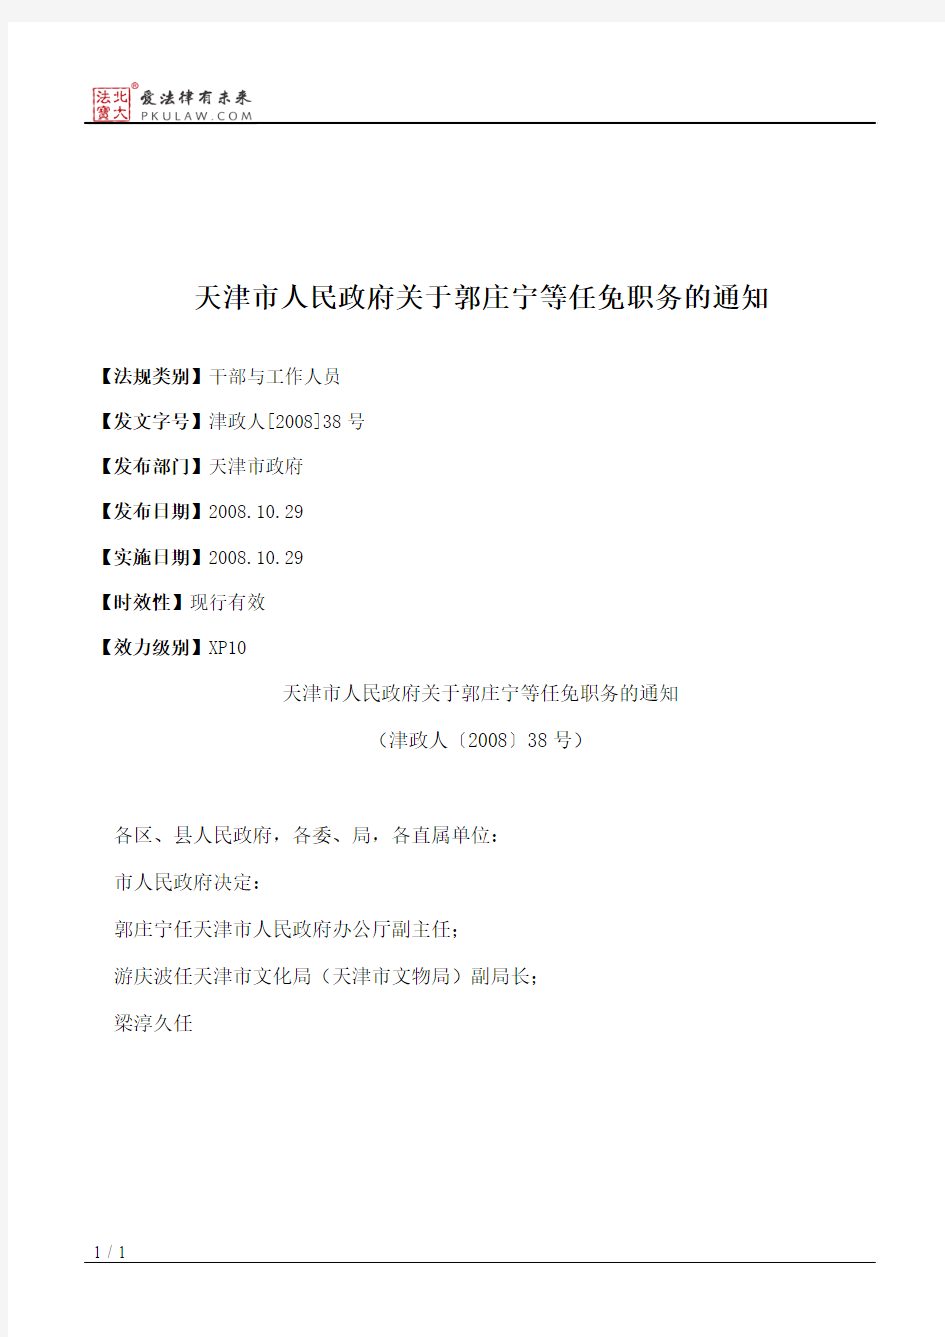 天津市人民政府关于郭庄宁等任免职务的通知